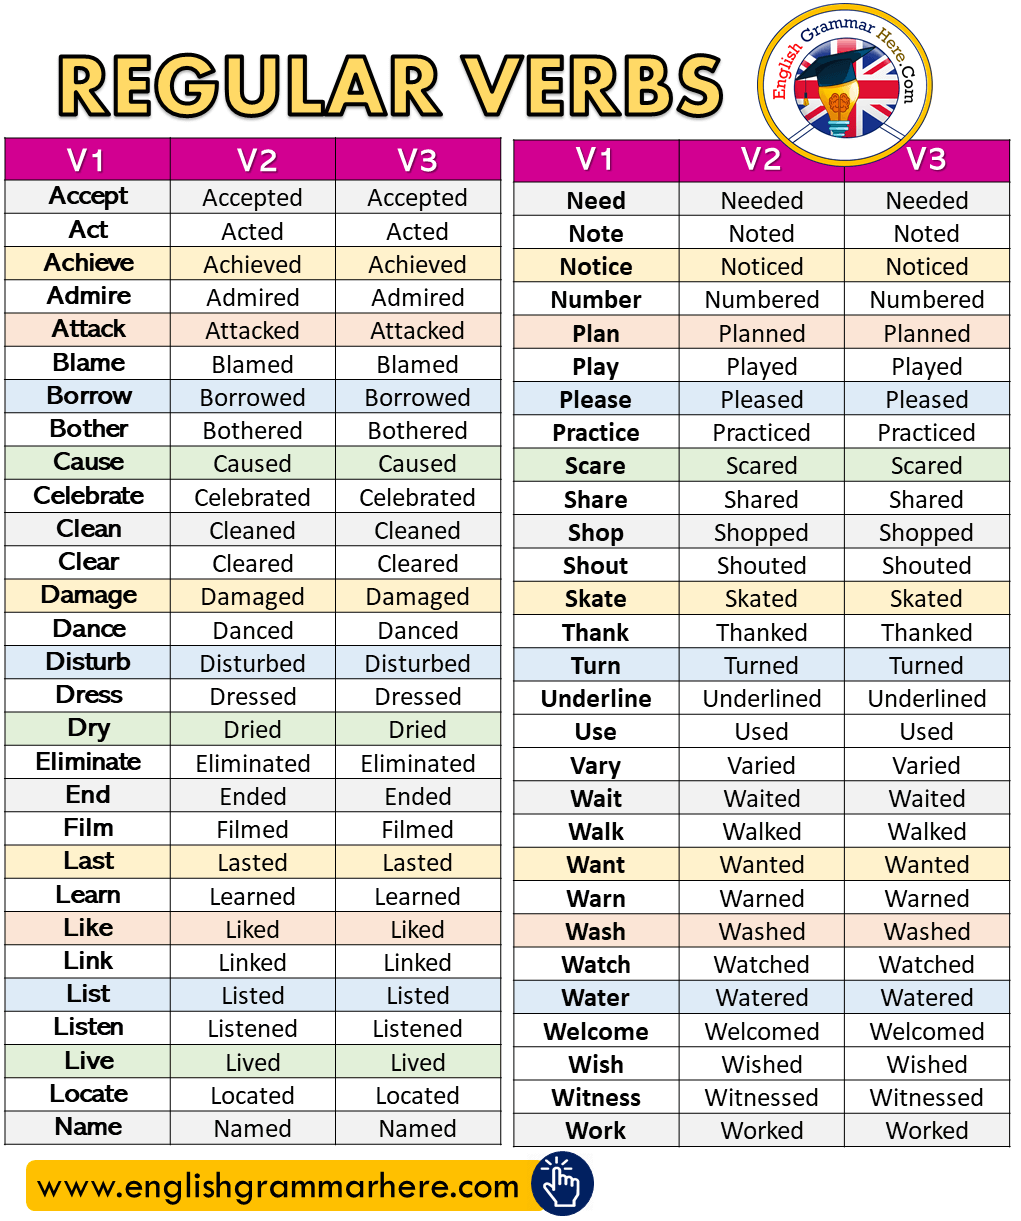 Regular Verbs List V1, V2, V3 - English Grammar Here | English Grammar,  Verbs List, Regular Verbs